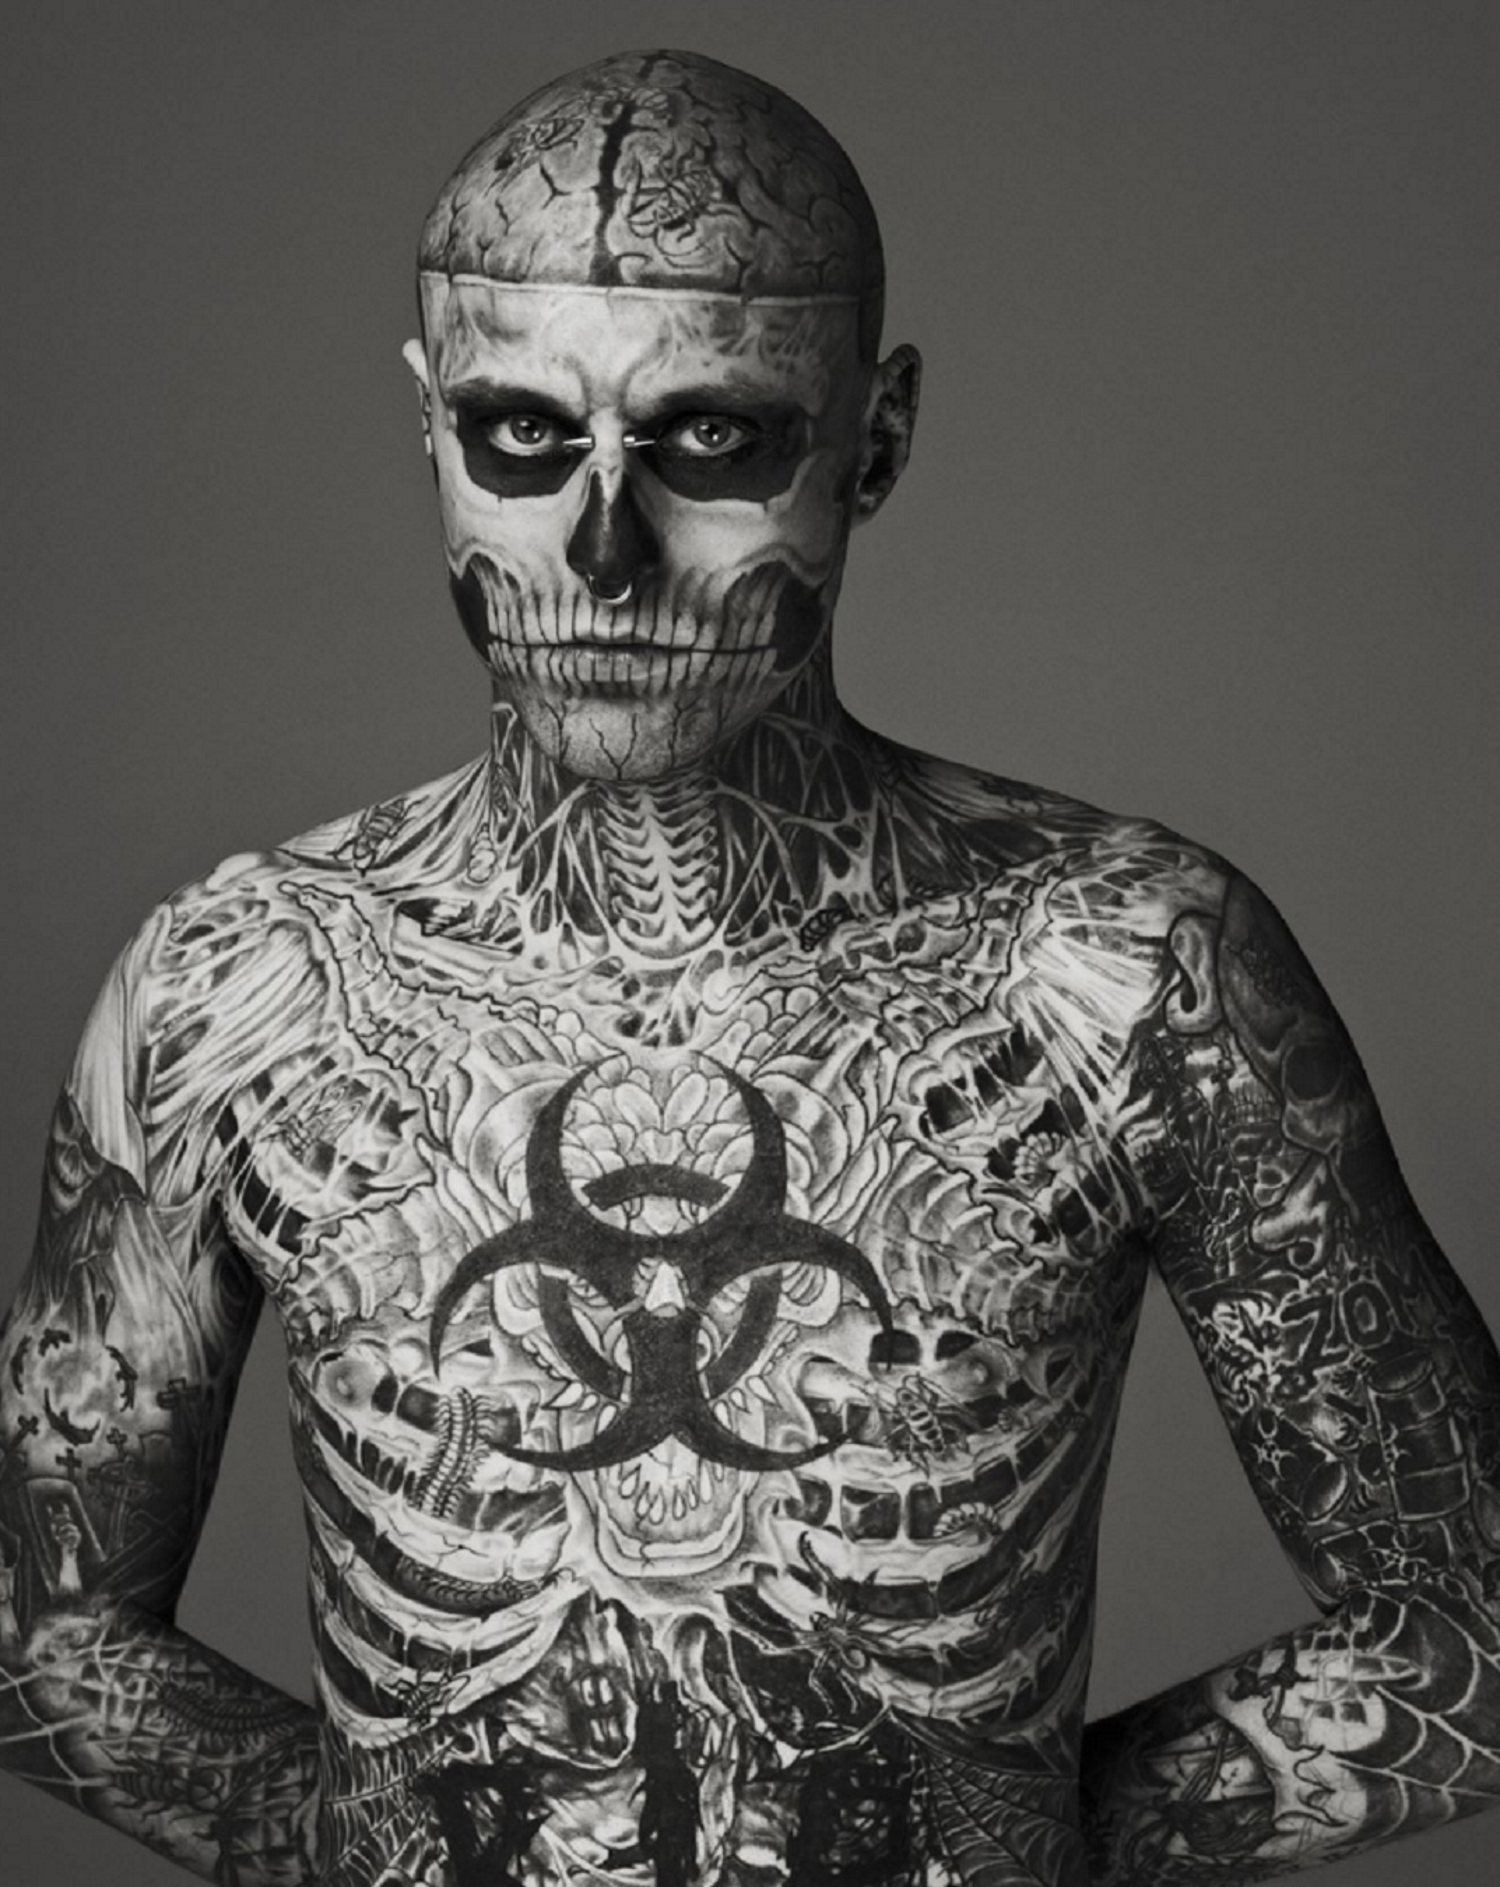 Commoció al món de la moda pel suïcidi del model Zombie Boy